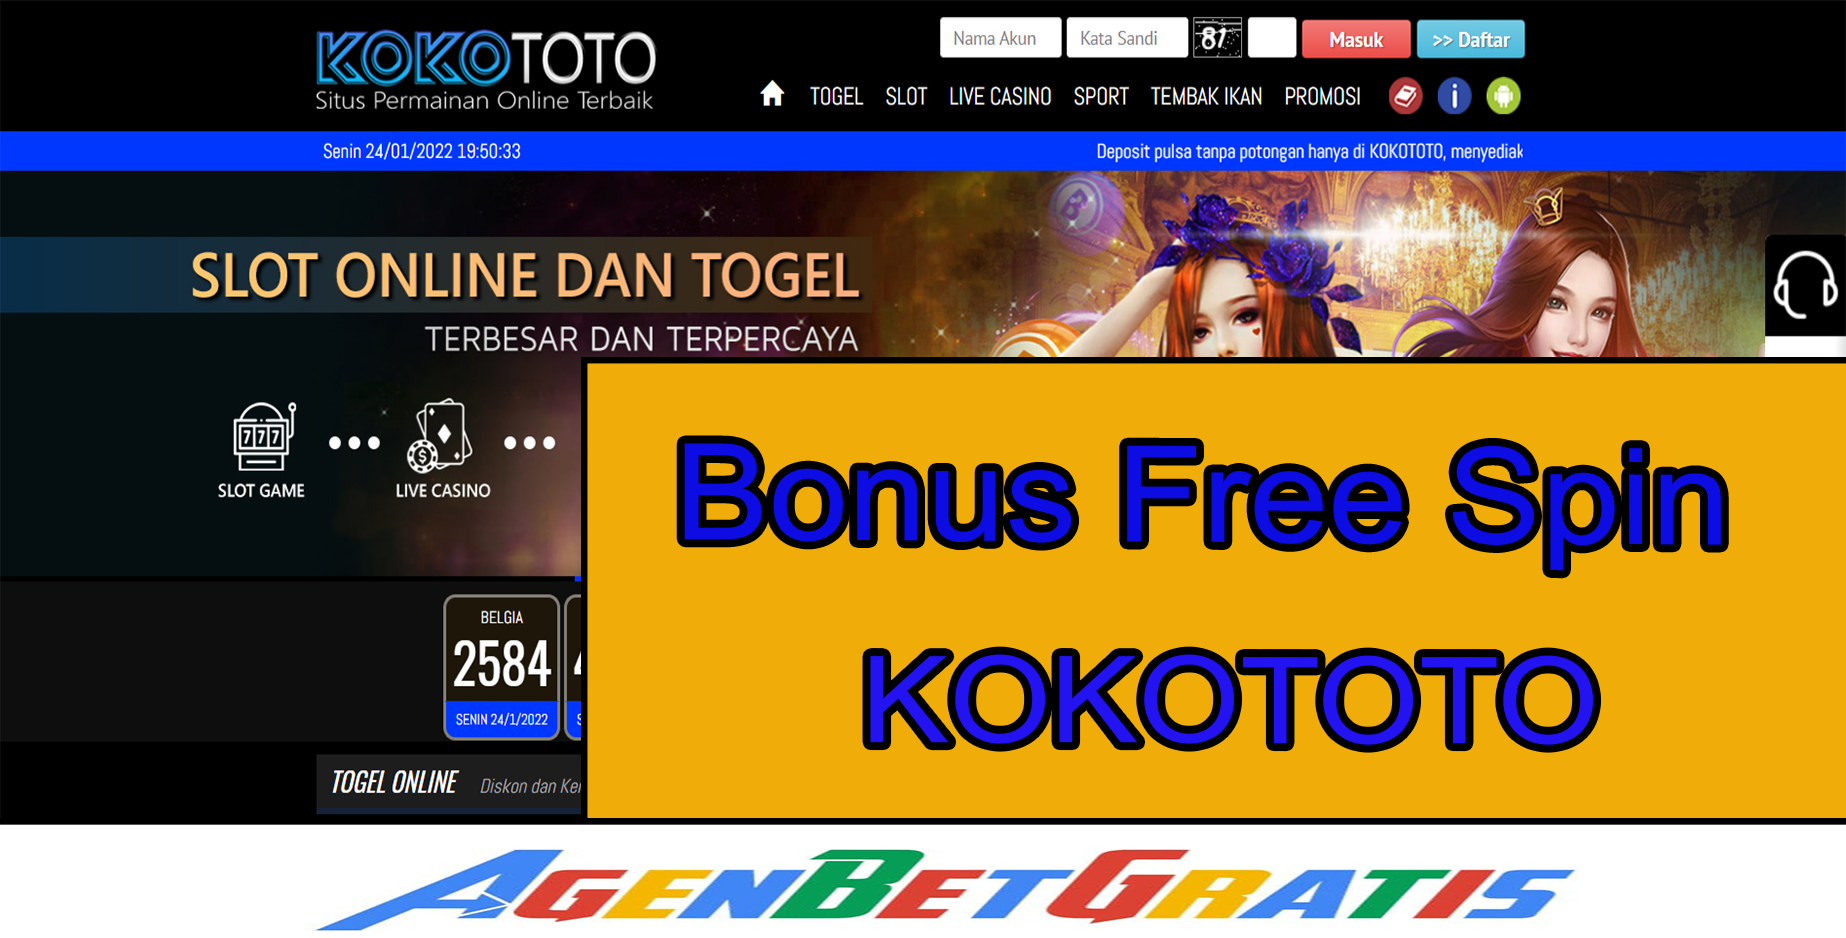 KokoToto - Bonus Free Spin